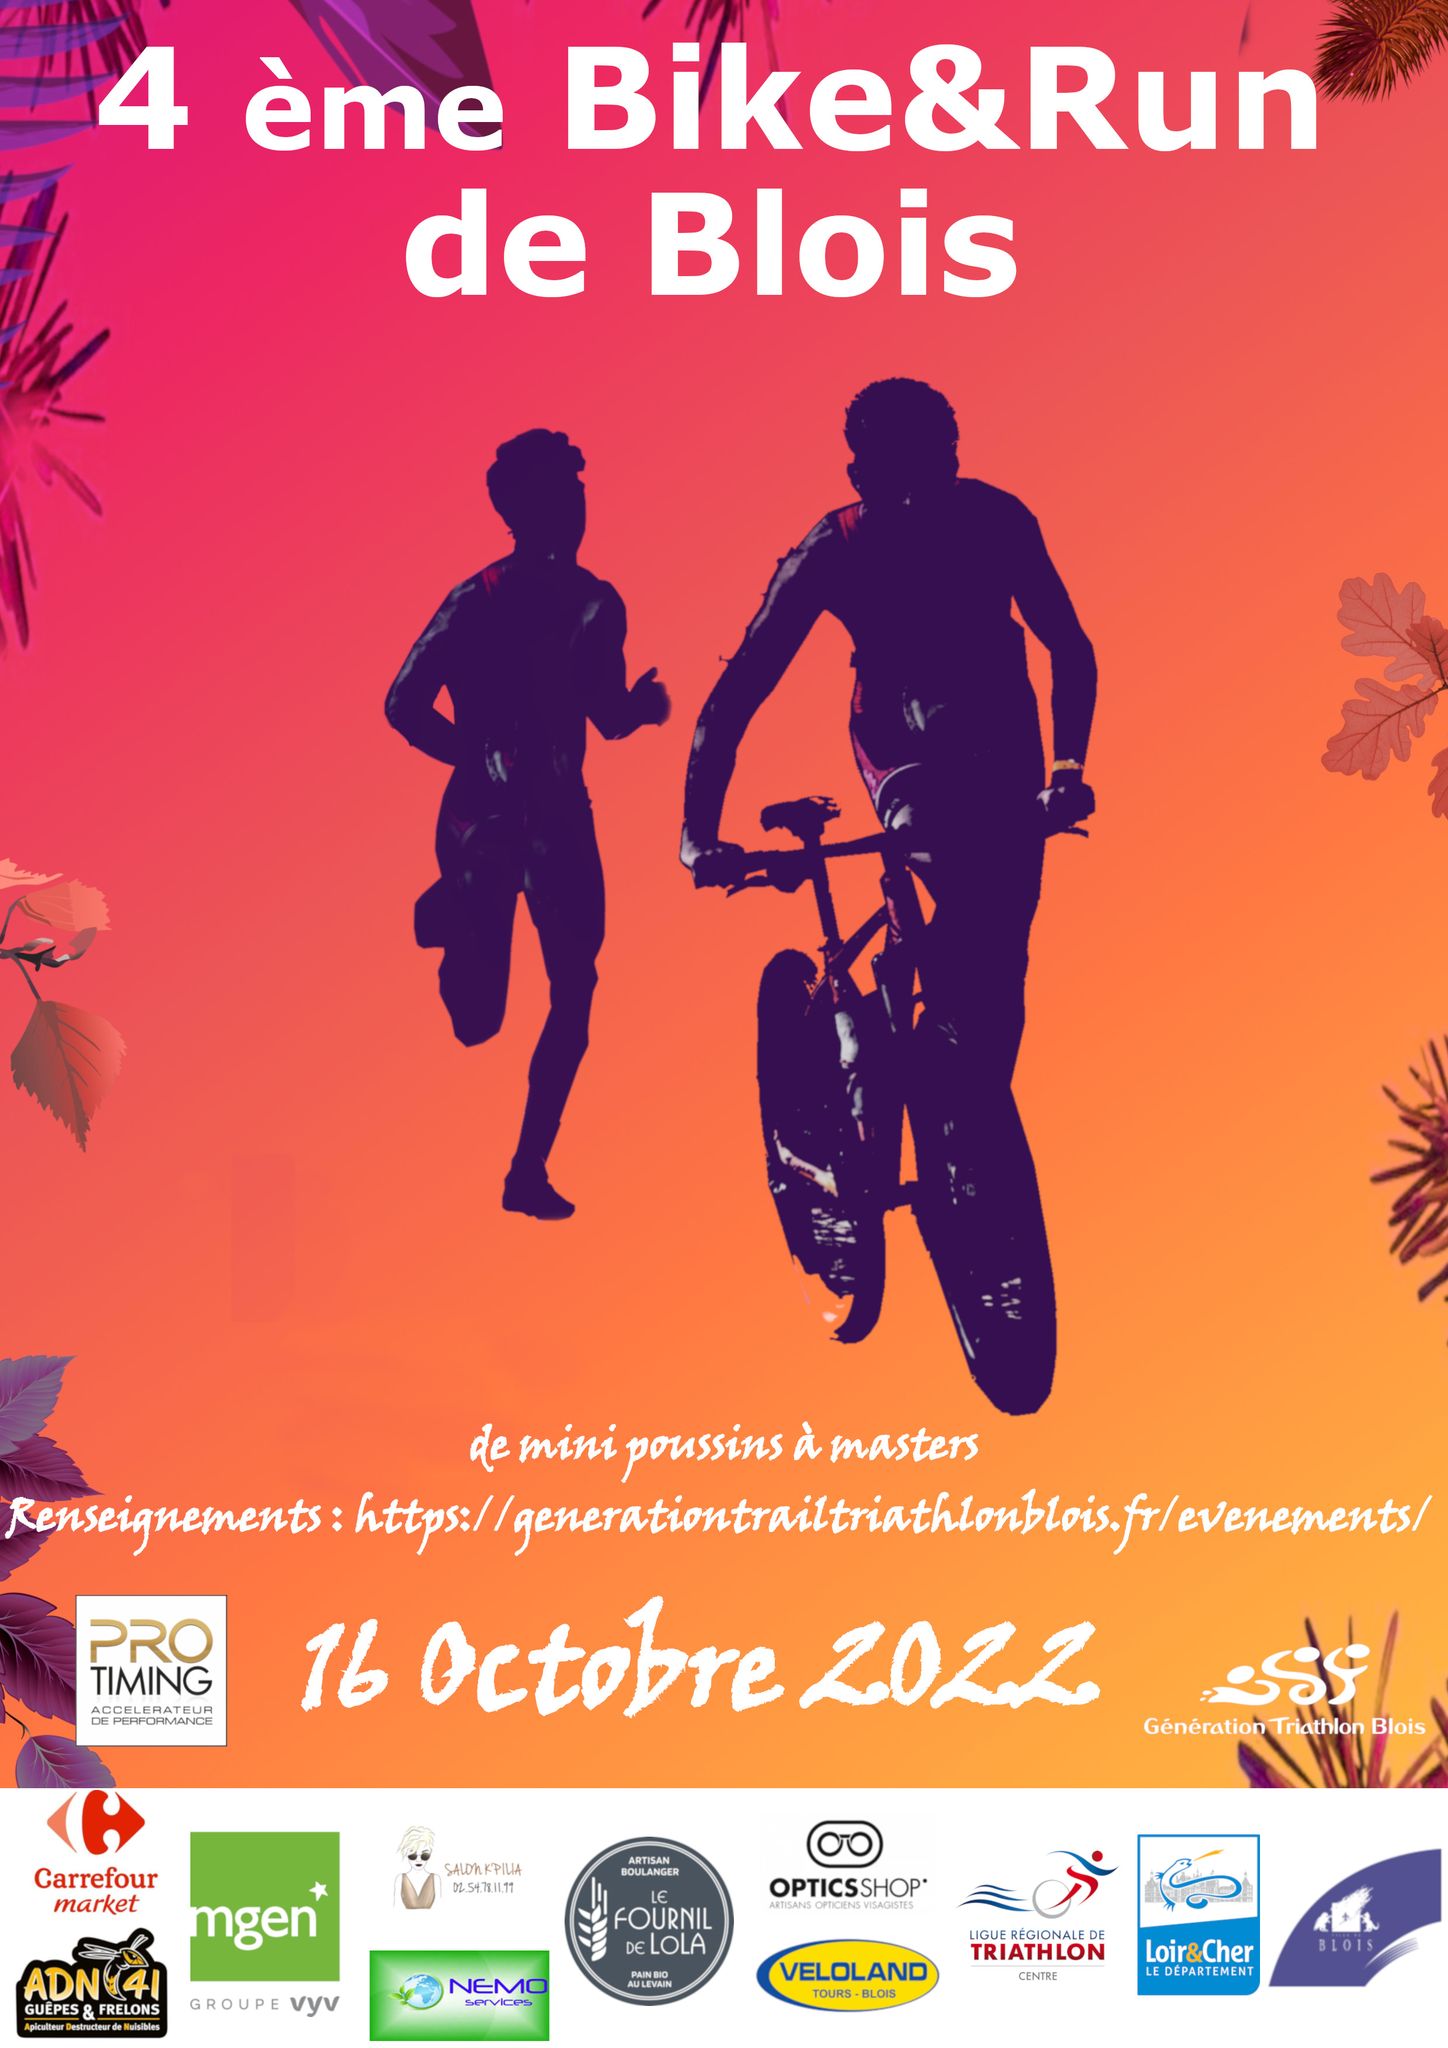 Bike&Run de Blois